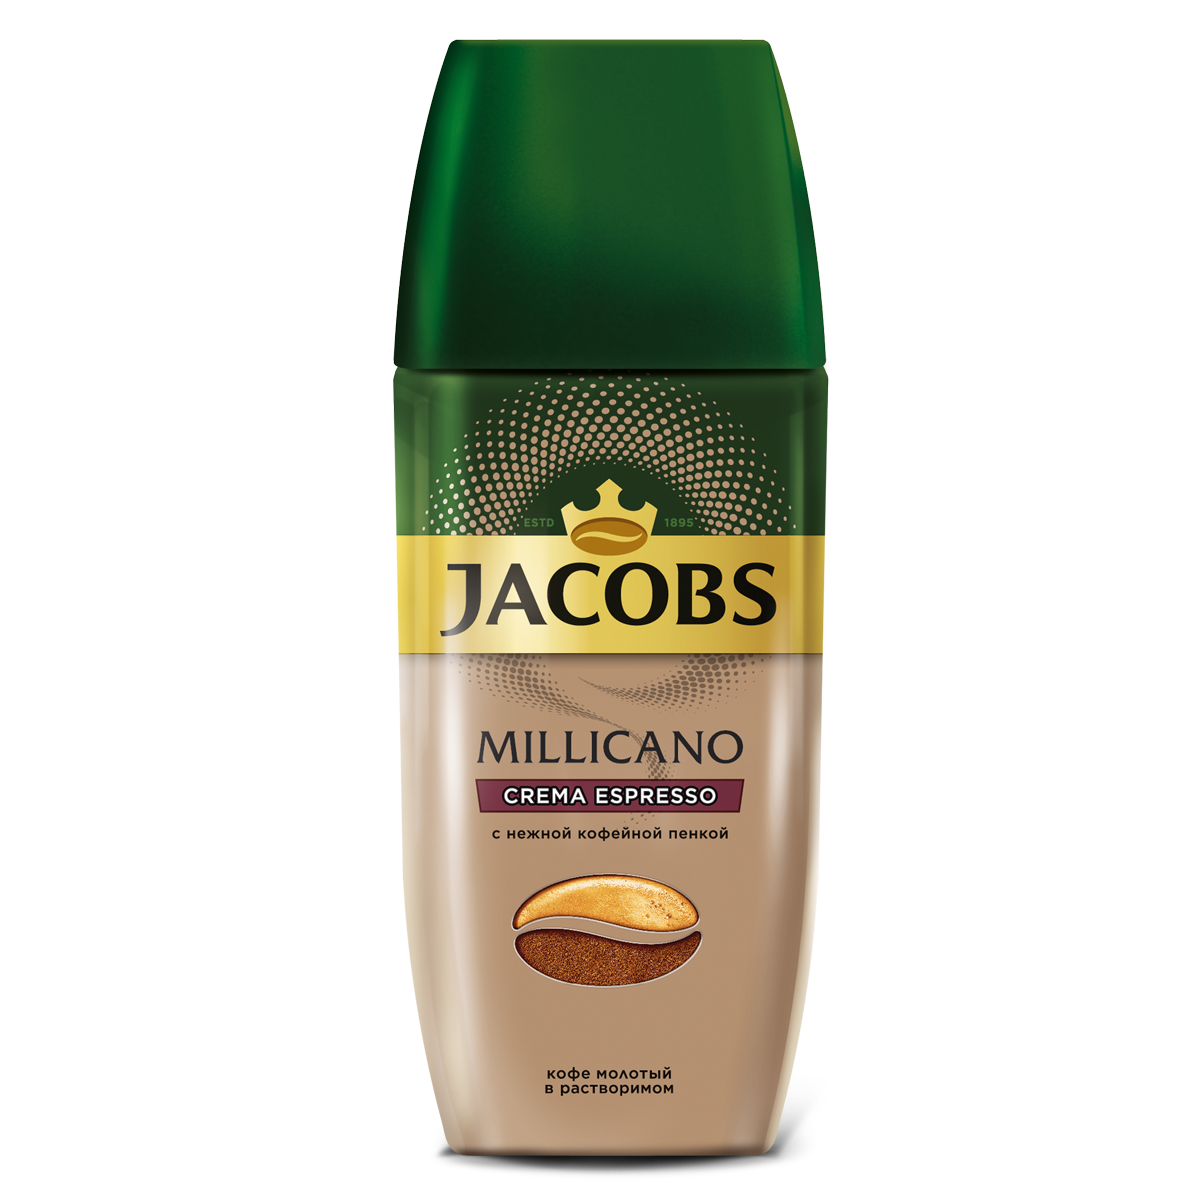 Мелющий кофе jacobs. Jacobs Millicano кофе растворимый 95 г. Кофе Якобс Милликано крема эспрессо. Кофе Якобс Милликано молотый. Jacobs Millicano crema Espresso.